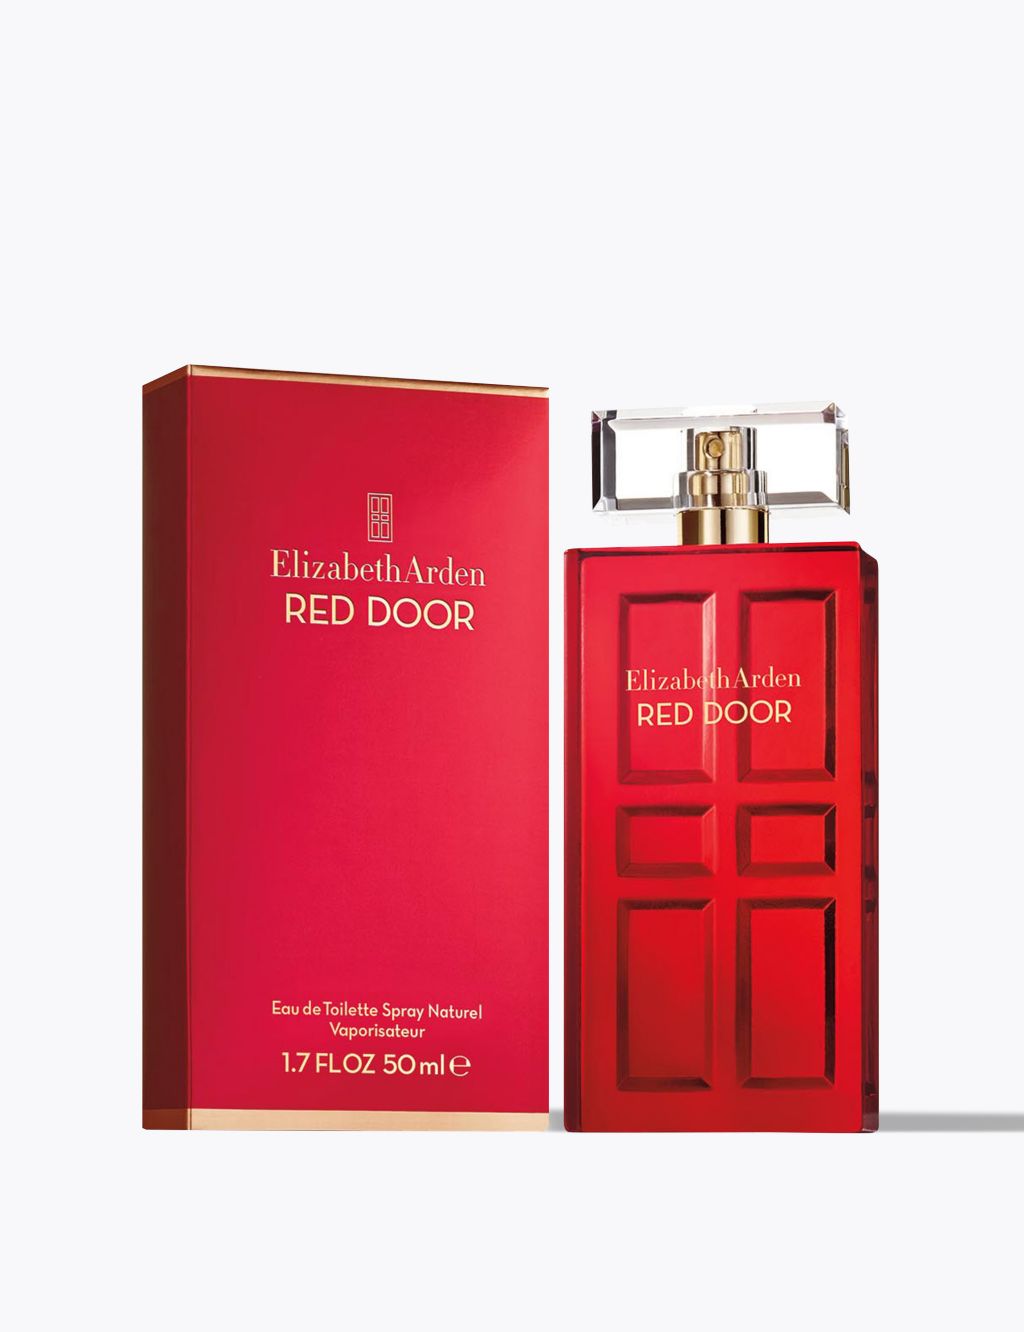 Red Door Eau de Toilette Spray Naturel, Perfume for Women 50ml